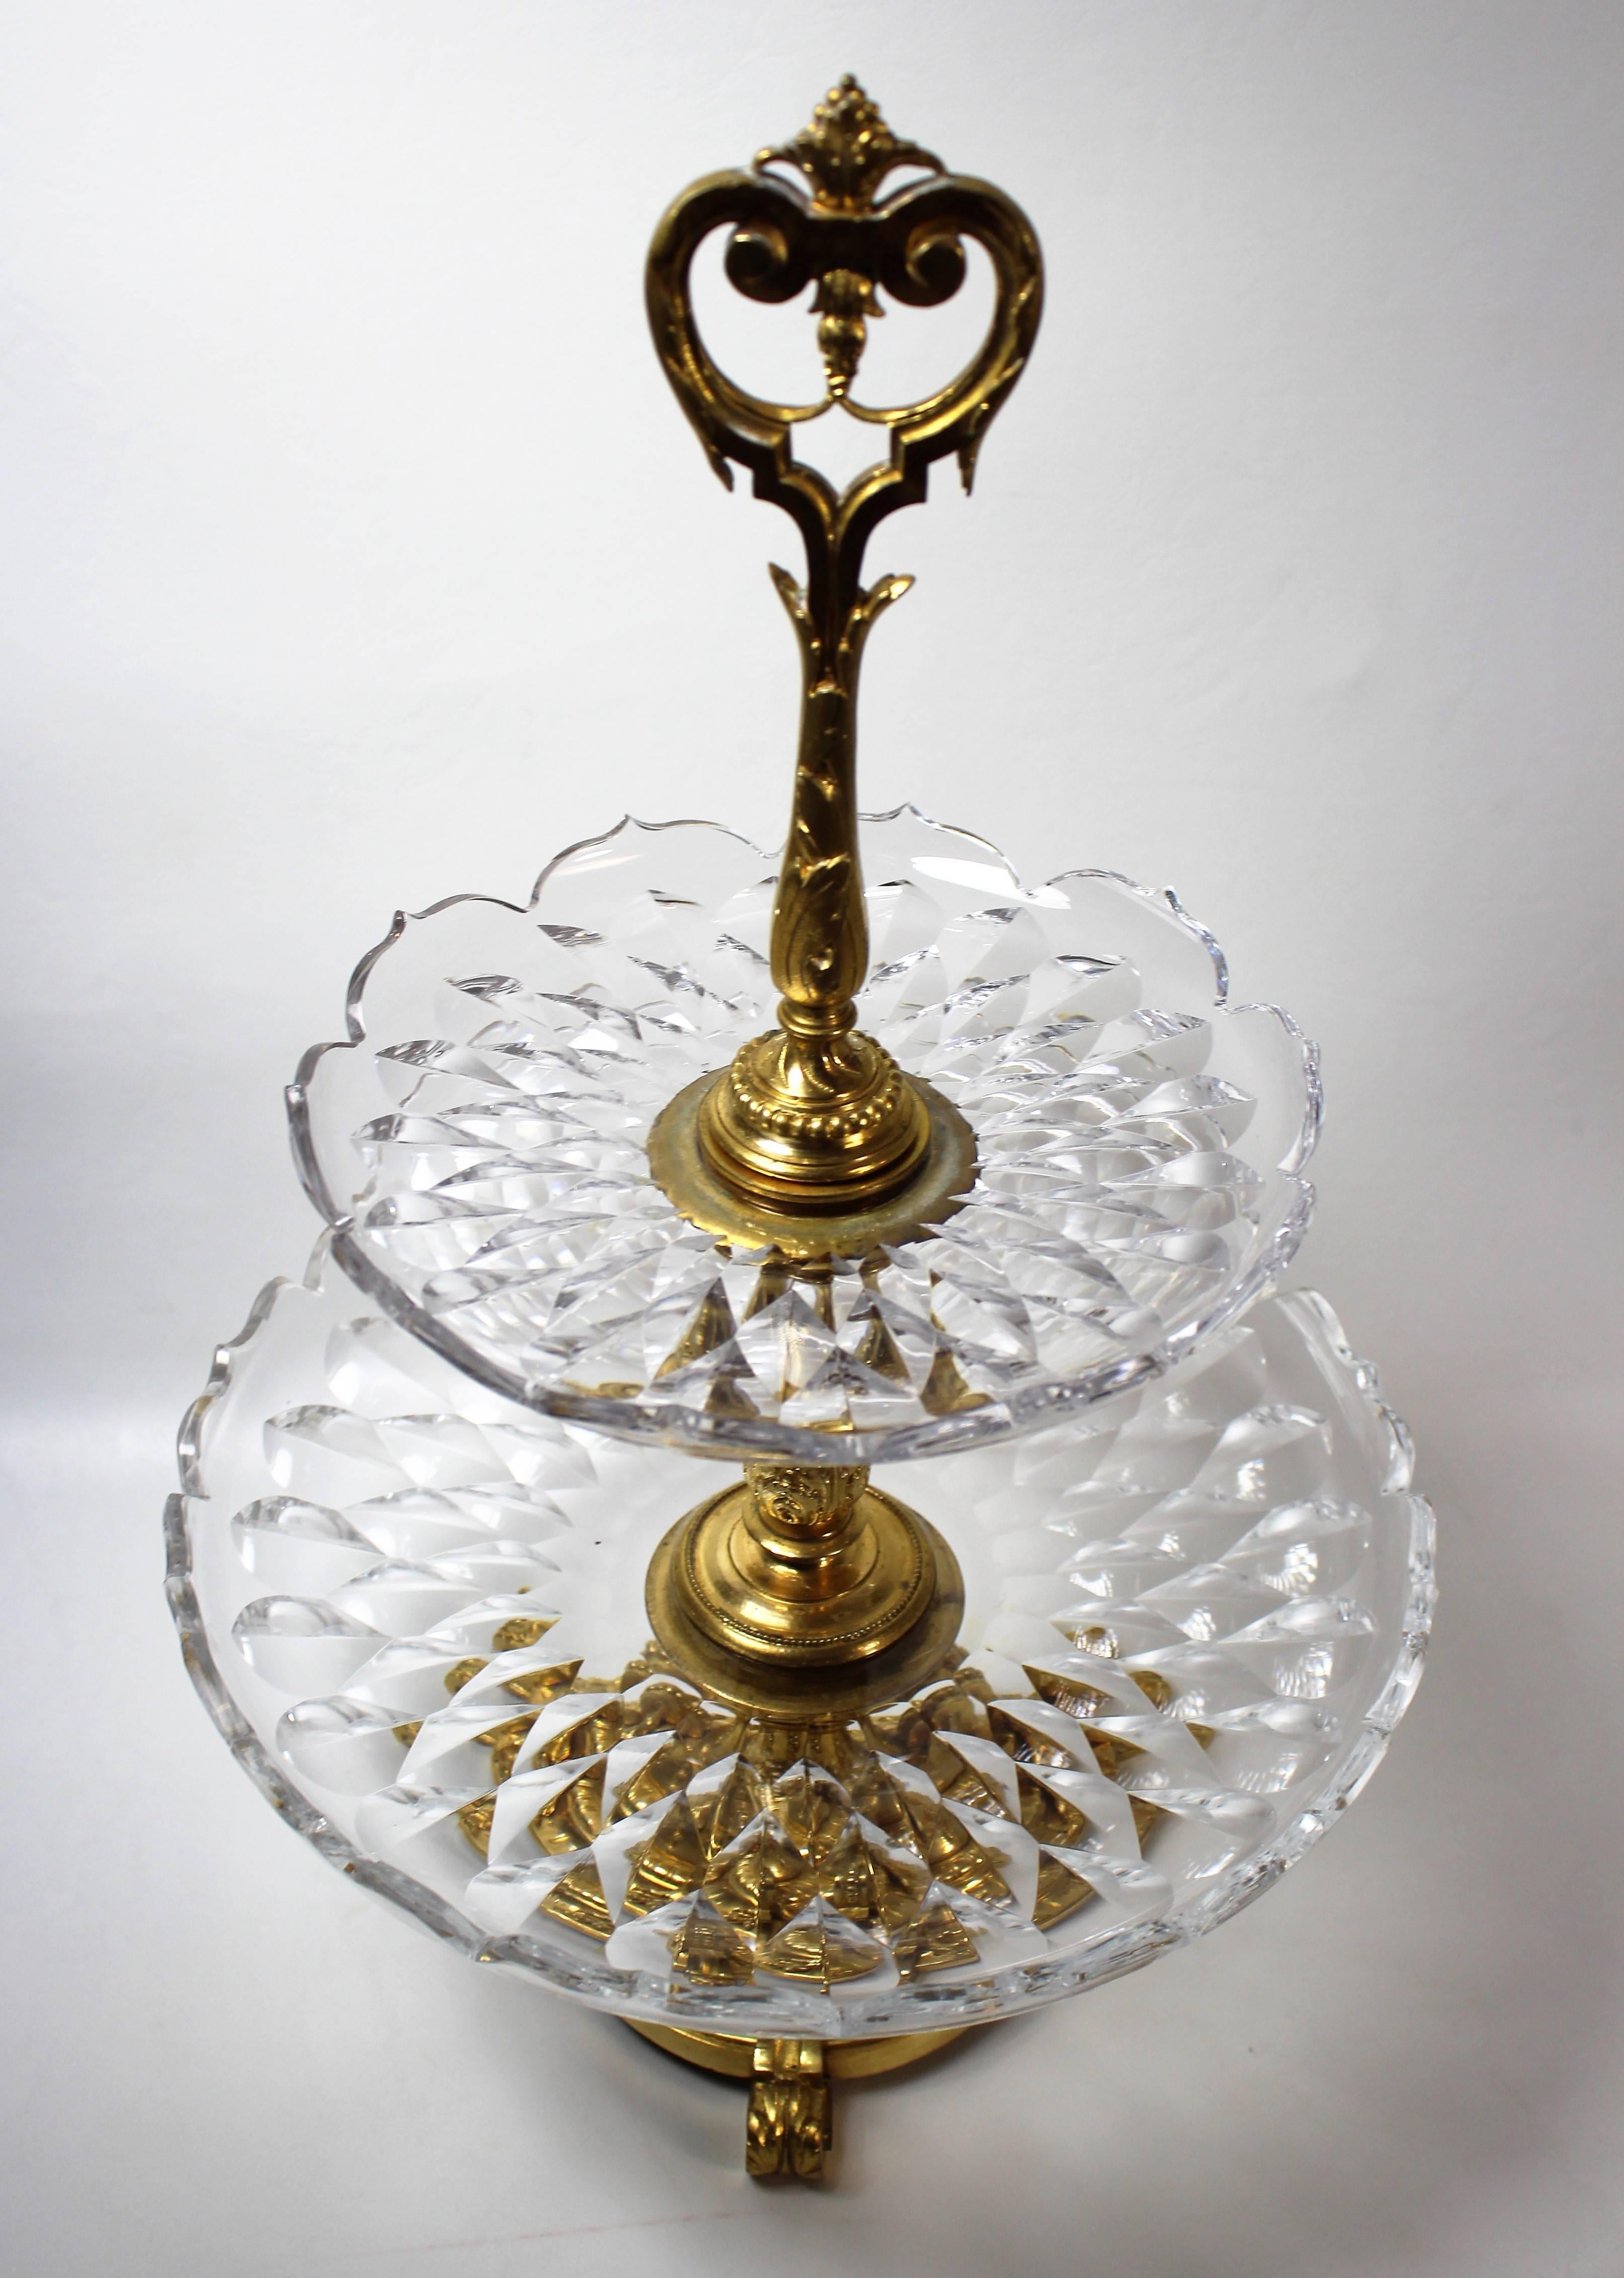 Französisch vergoldete Bronze und geschliffenem Kristall zweistöckigen surtout de table oder Mittelstück tazza.